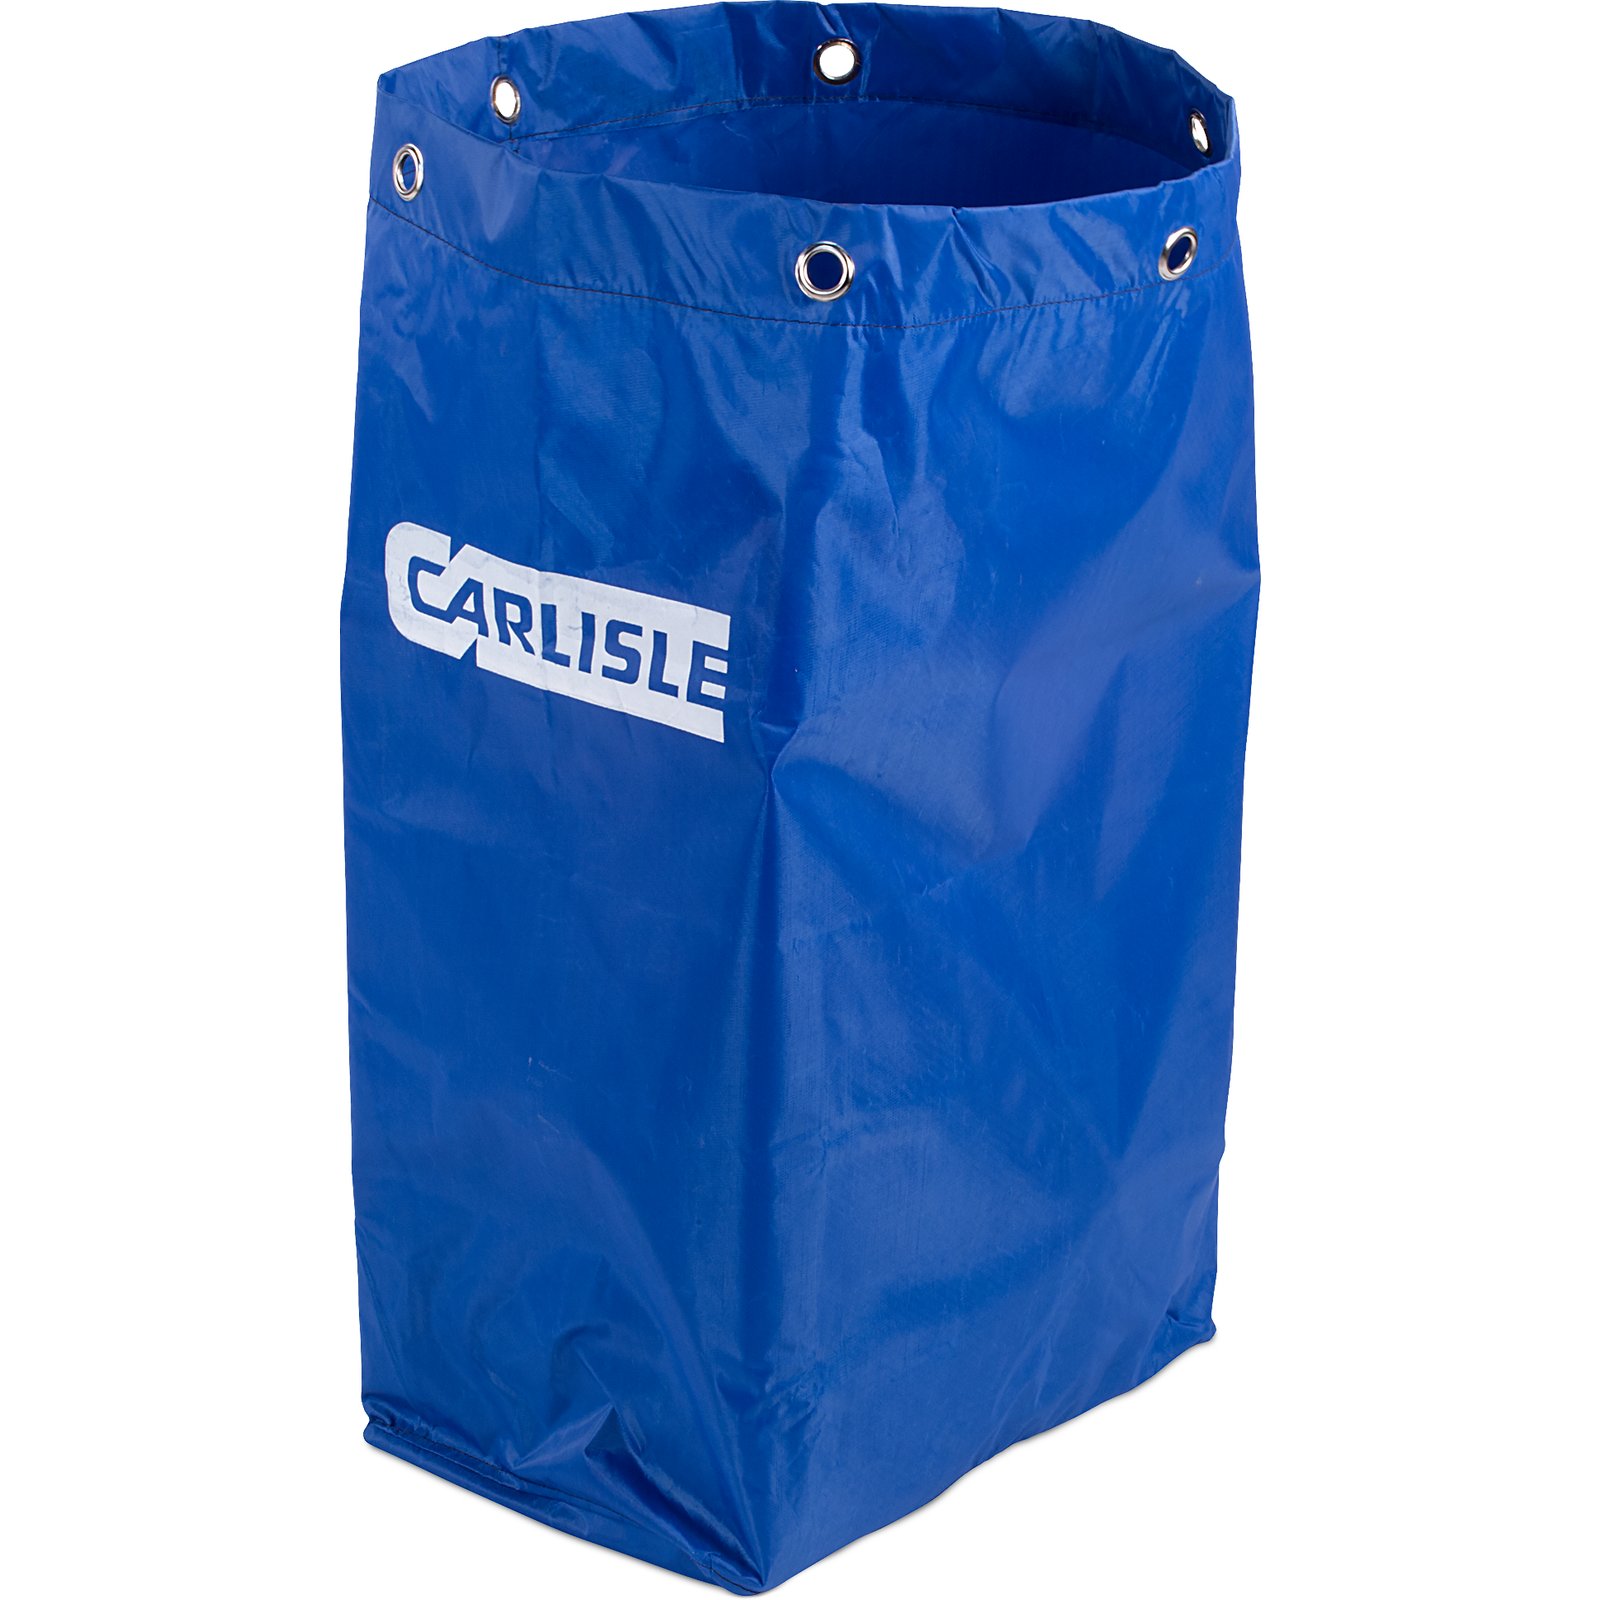 Carlisle Replacement Vinyl Bag  f/ Janitors Cart, 25 Gallon, 